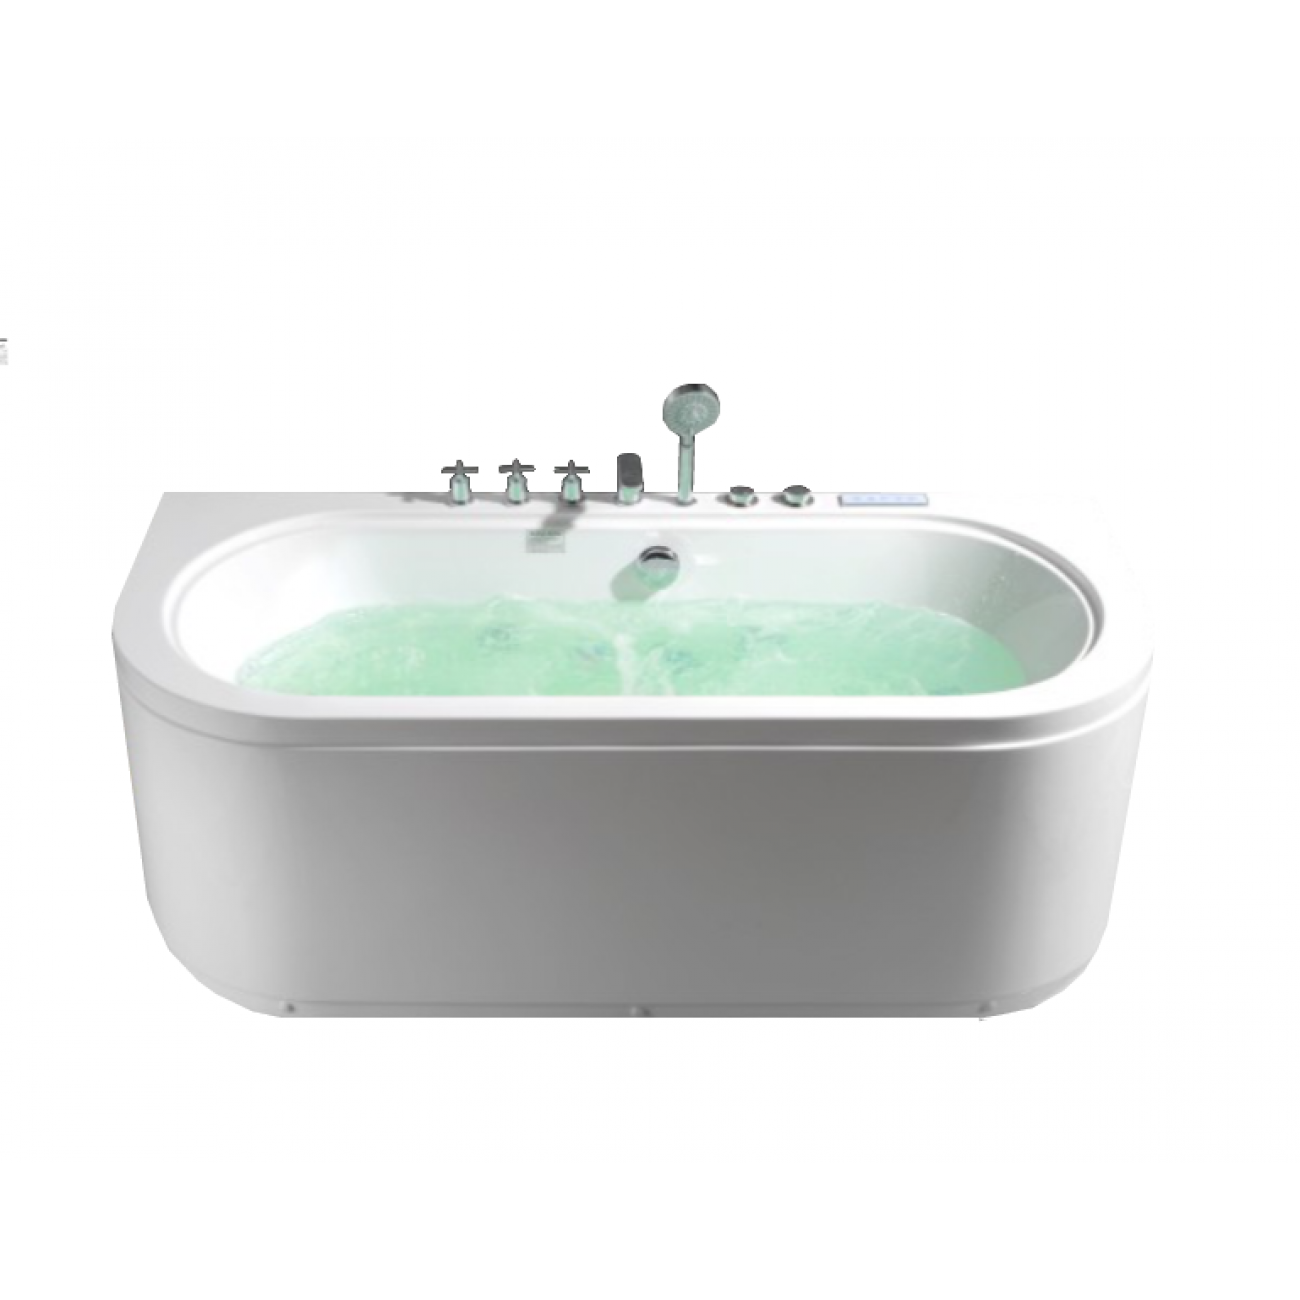 Гидромассажная ванна Frank 170x80 F160 пристенная, белая, цвет есть